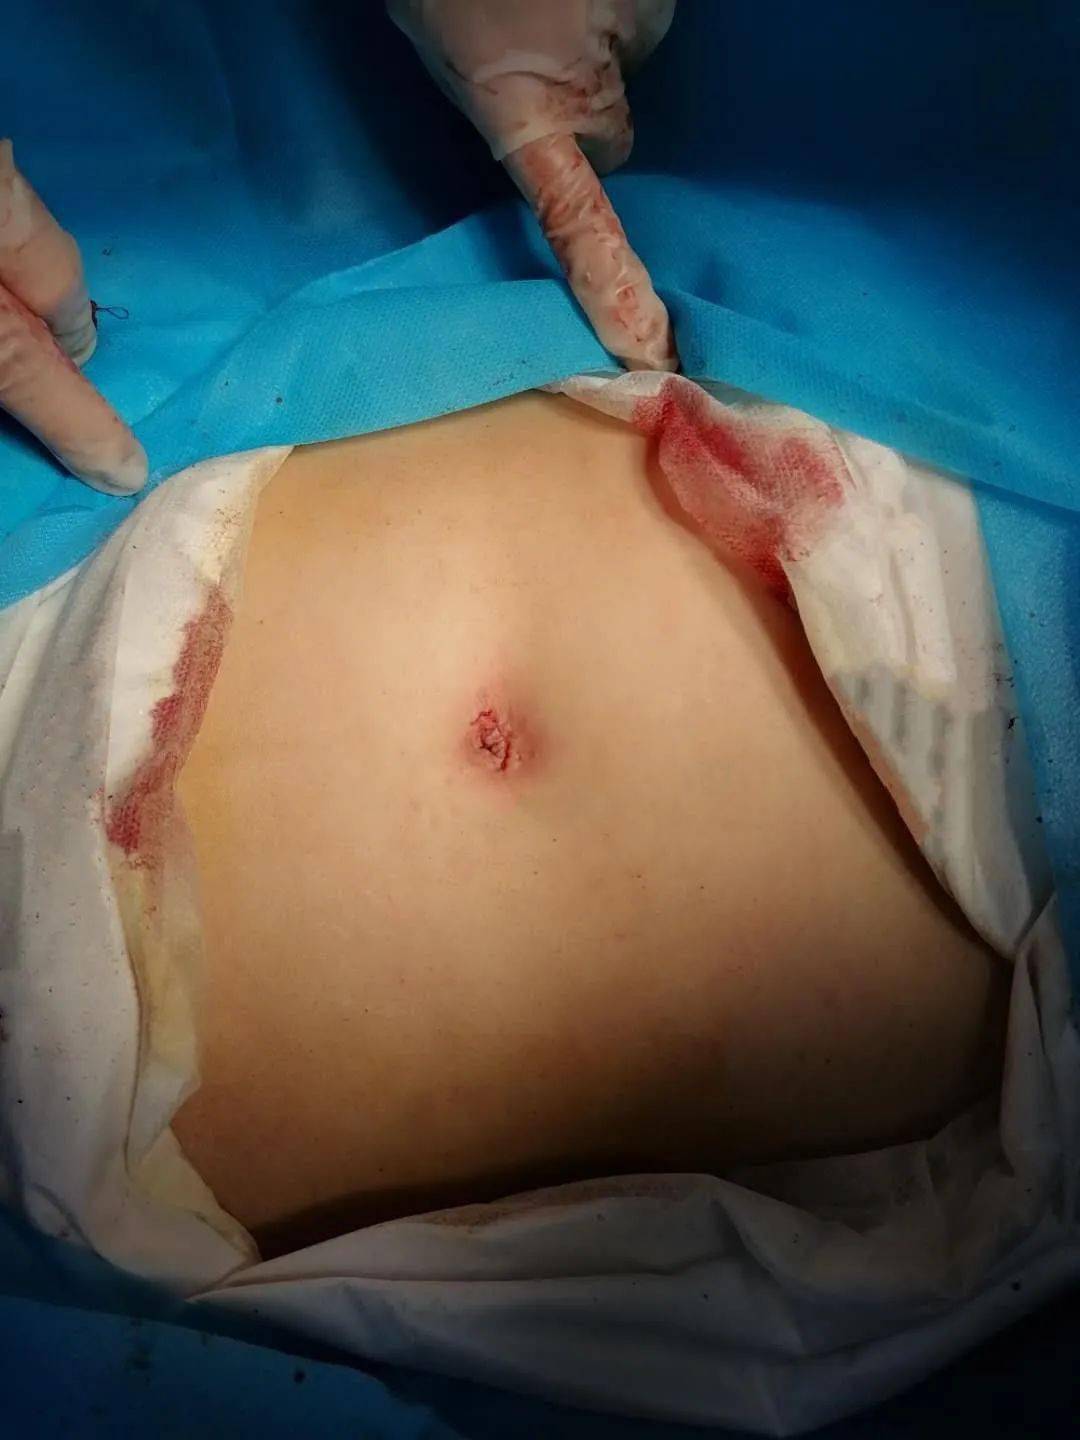 宫外孕微创手术伤口图图片